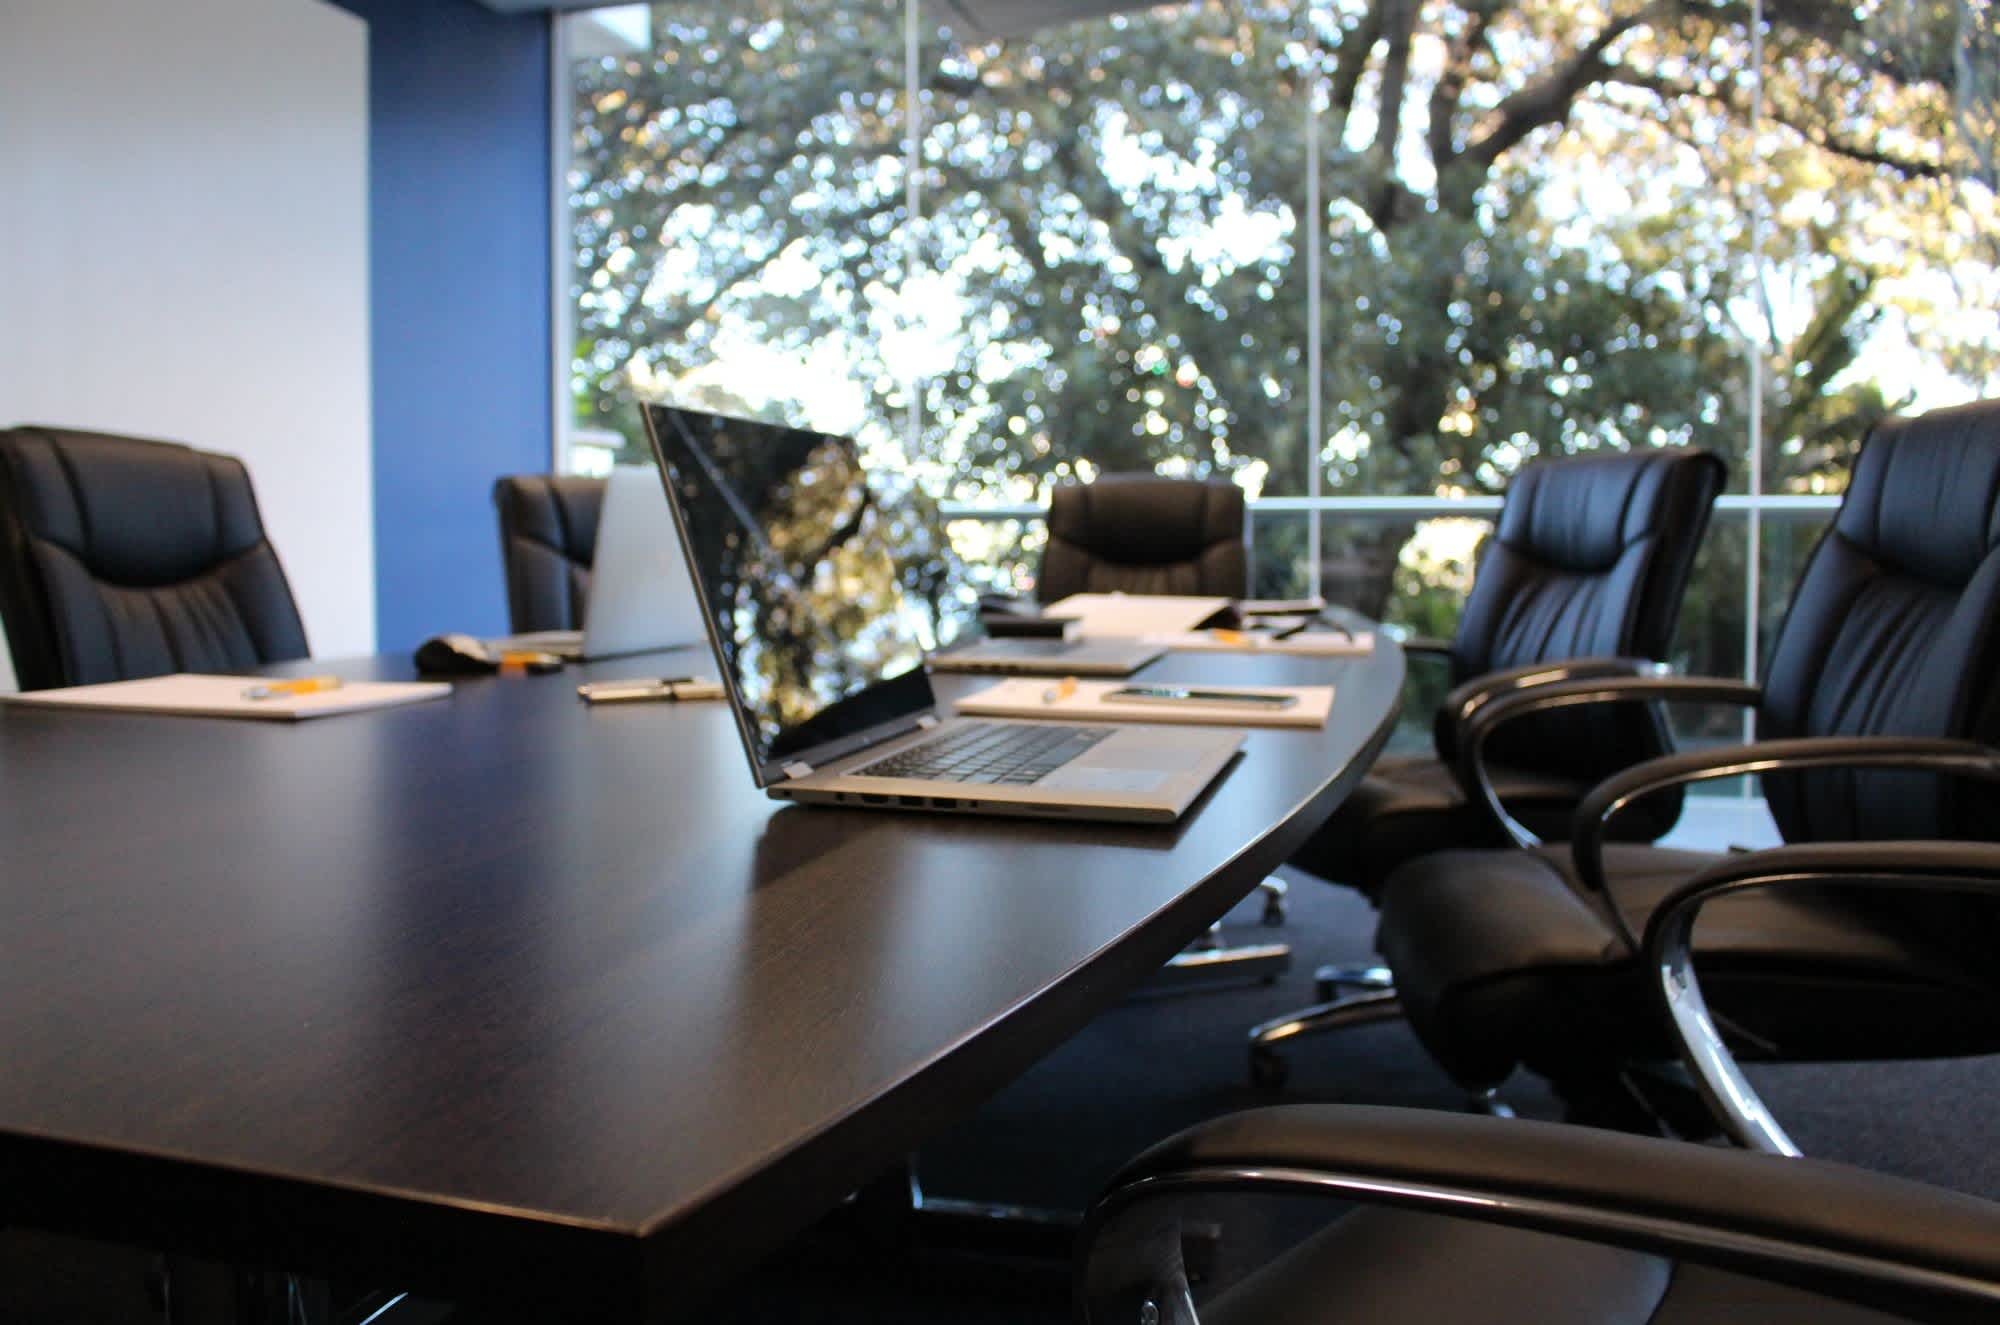 2020/06/boardroom-boardroom-meeting-business-meeting-meeting-164575.jpg